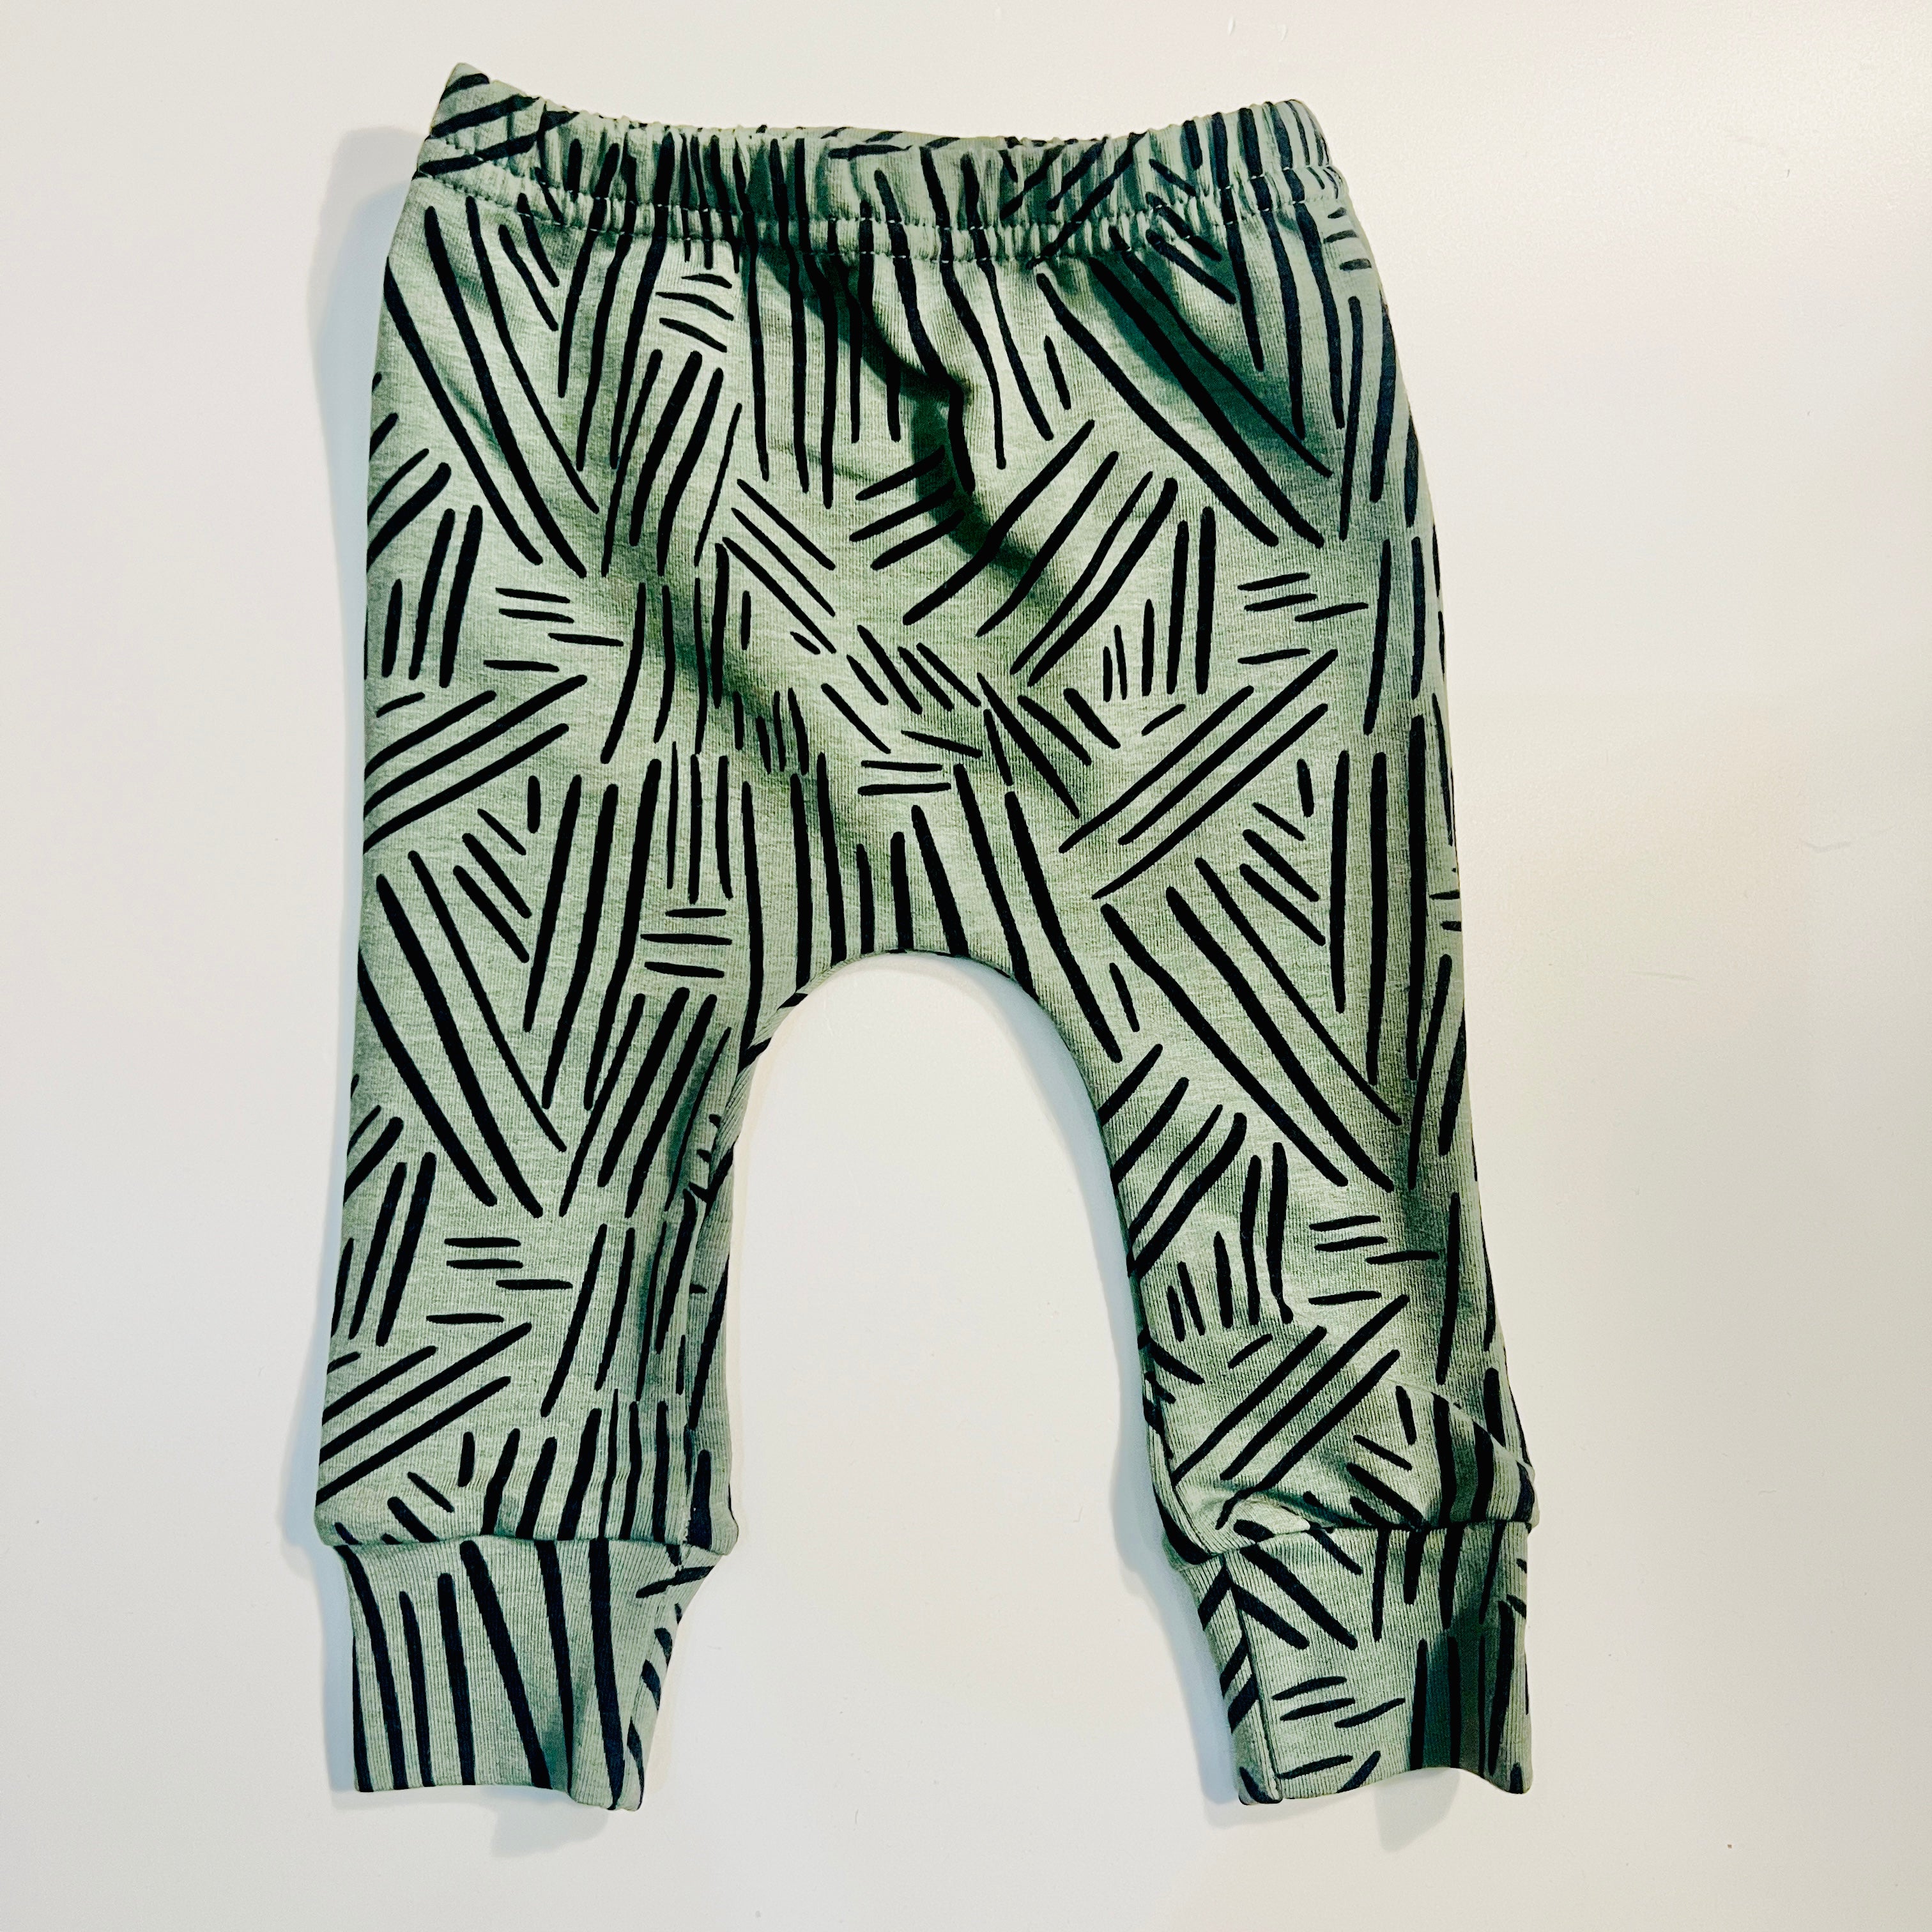 Eddie & Bee organic cotton leggings in Sage Green "Bamboo sticks" print.